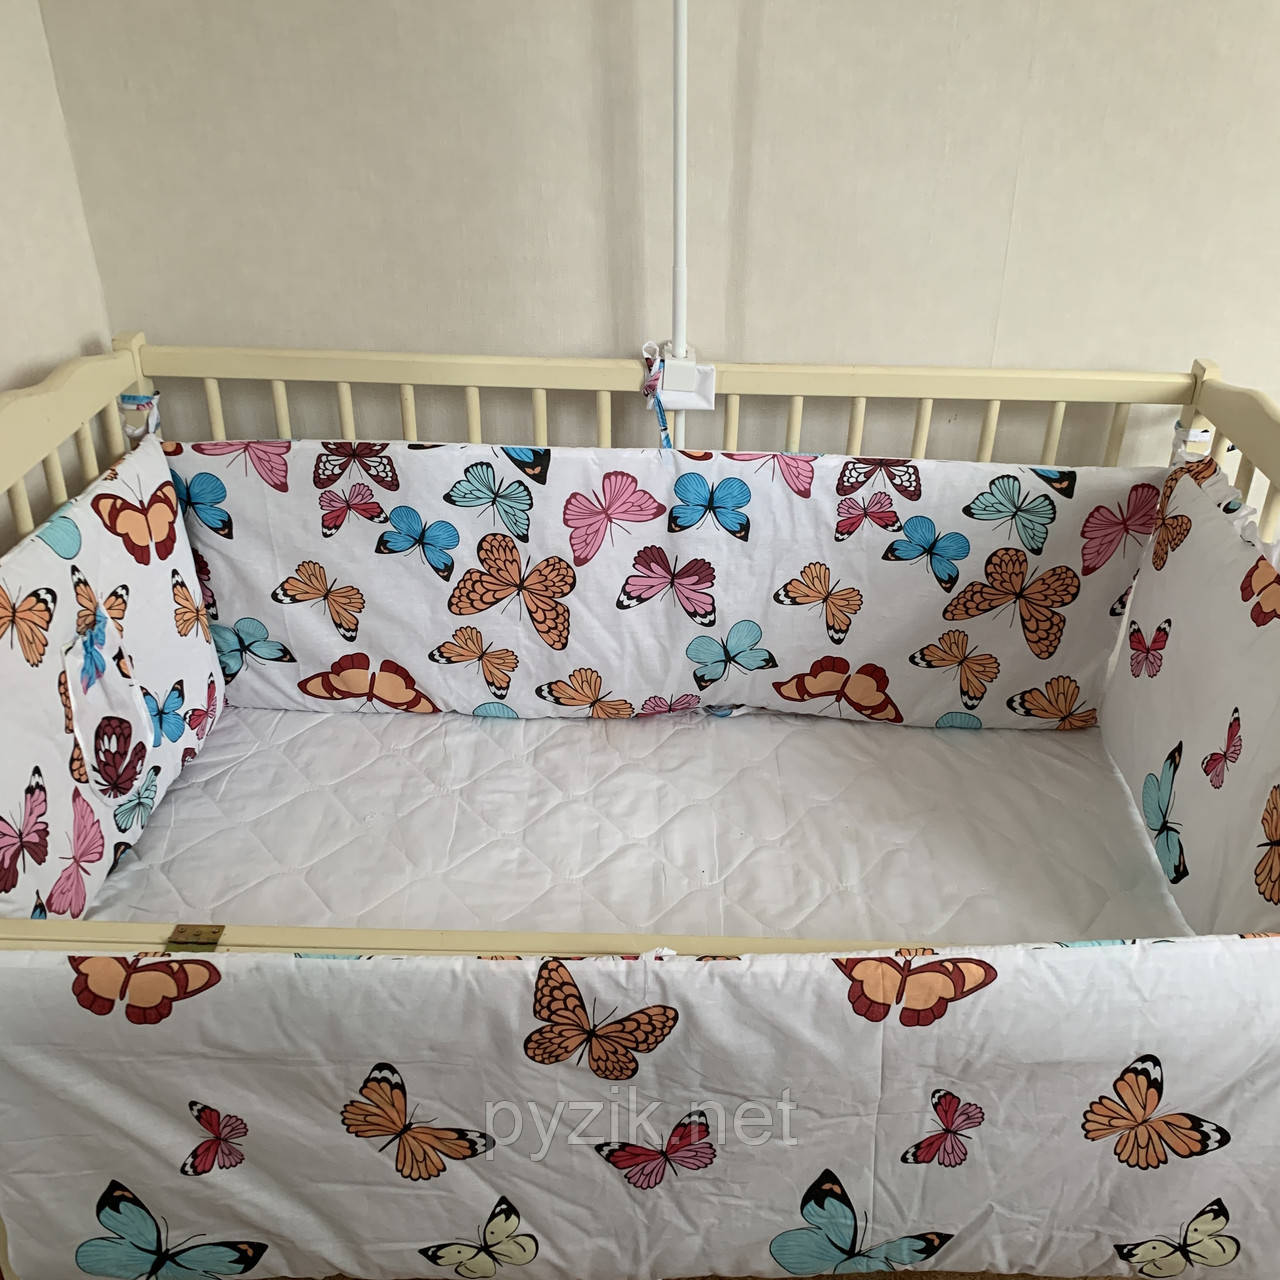 Захист для дитячих ліжок 120х60 см, "Бабочка" біла